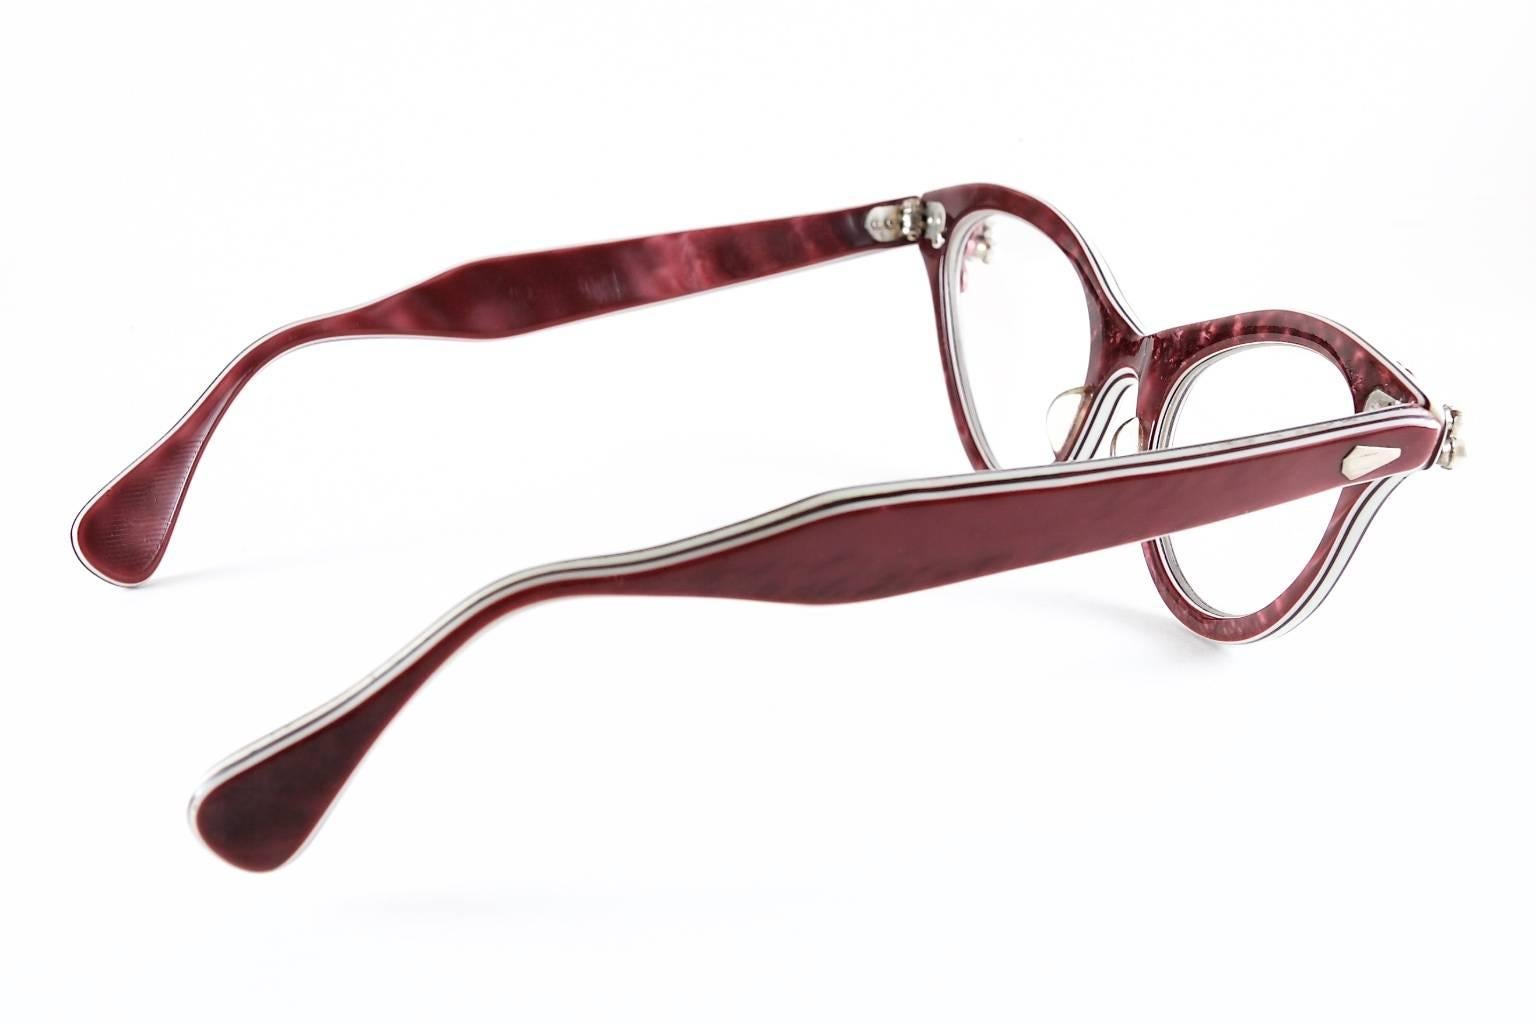 1950s eye glasses